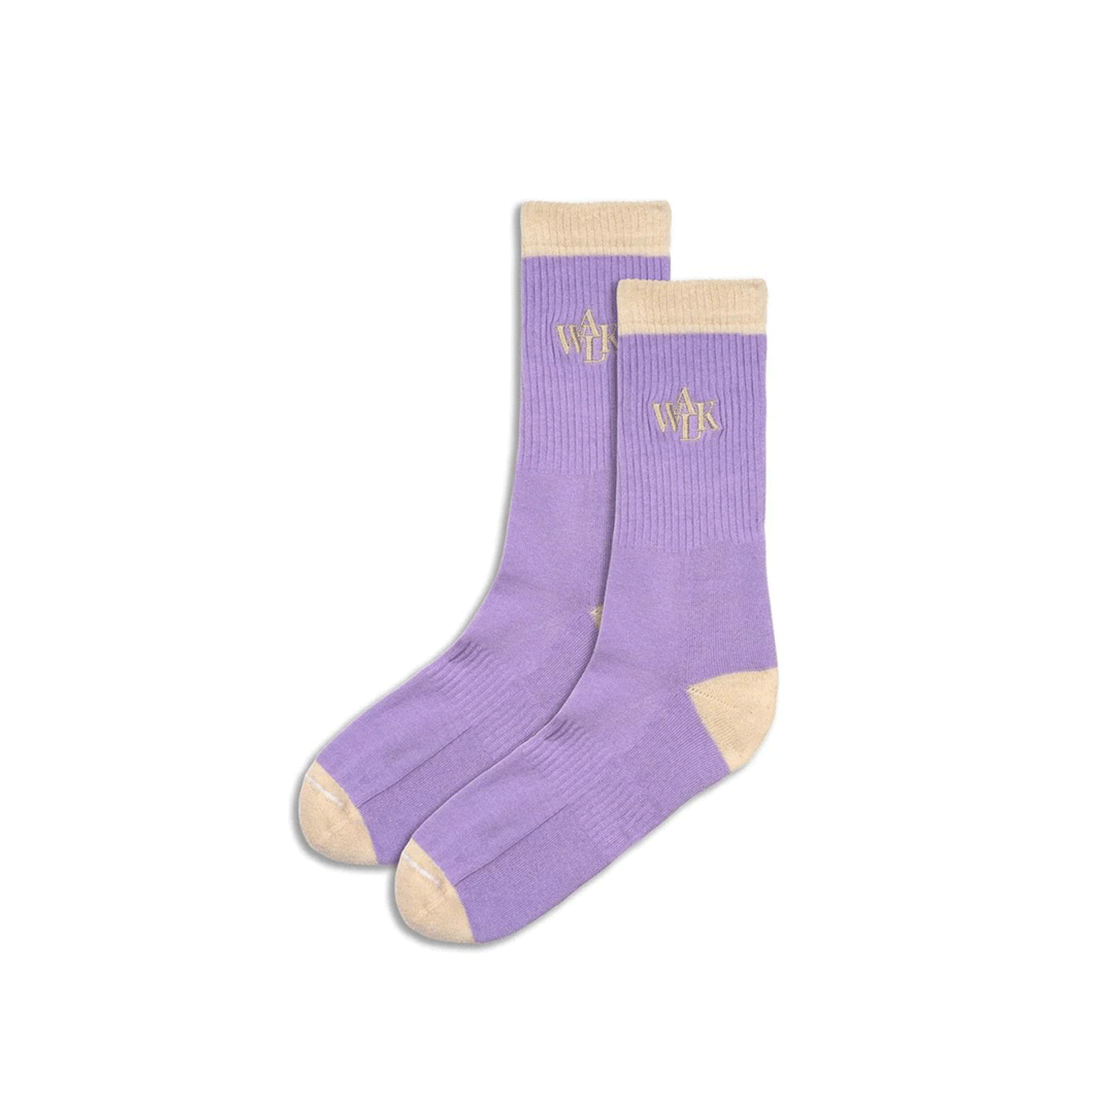 Les chaussettes lilas